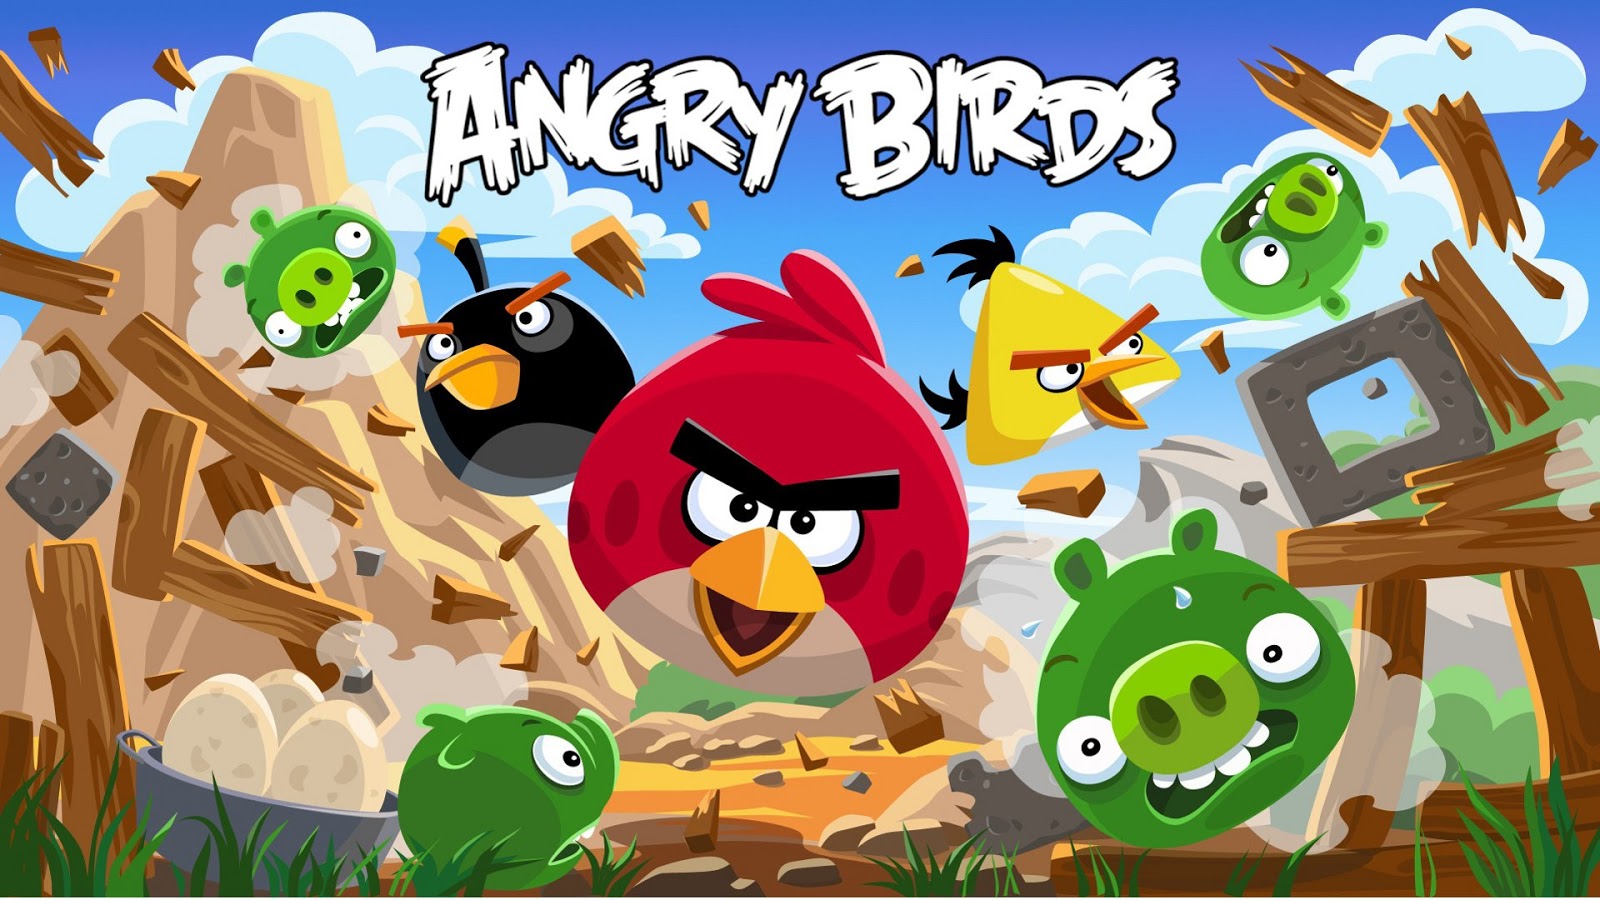 Angry birds rio 2 free